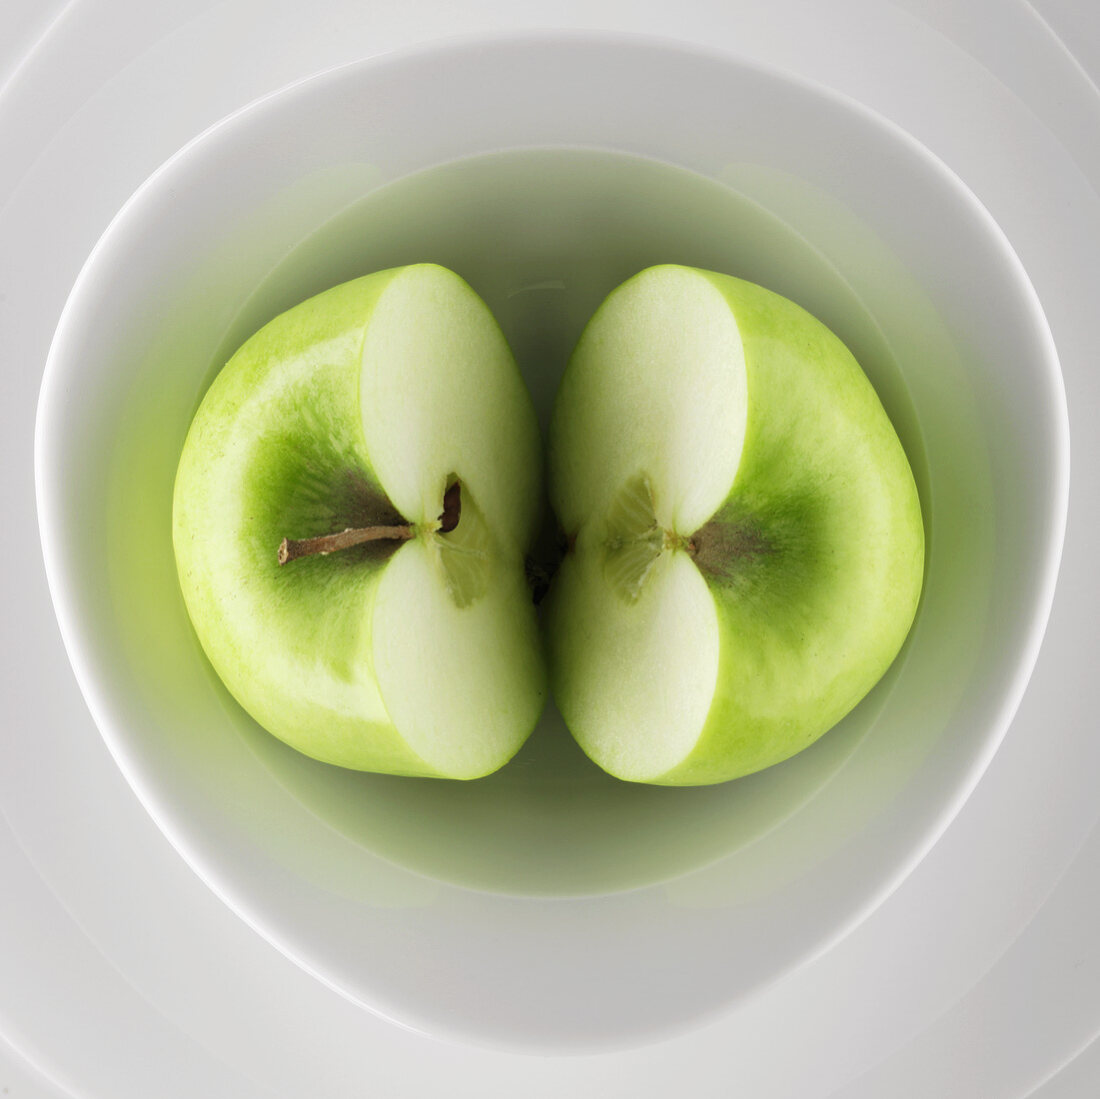 Halbierter grüner Apfel in einer Schale